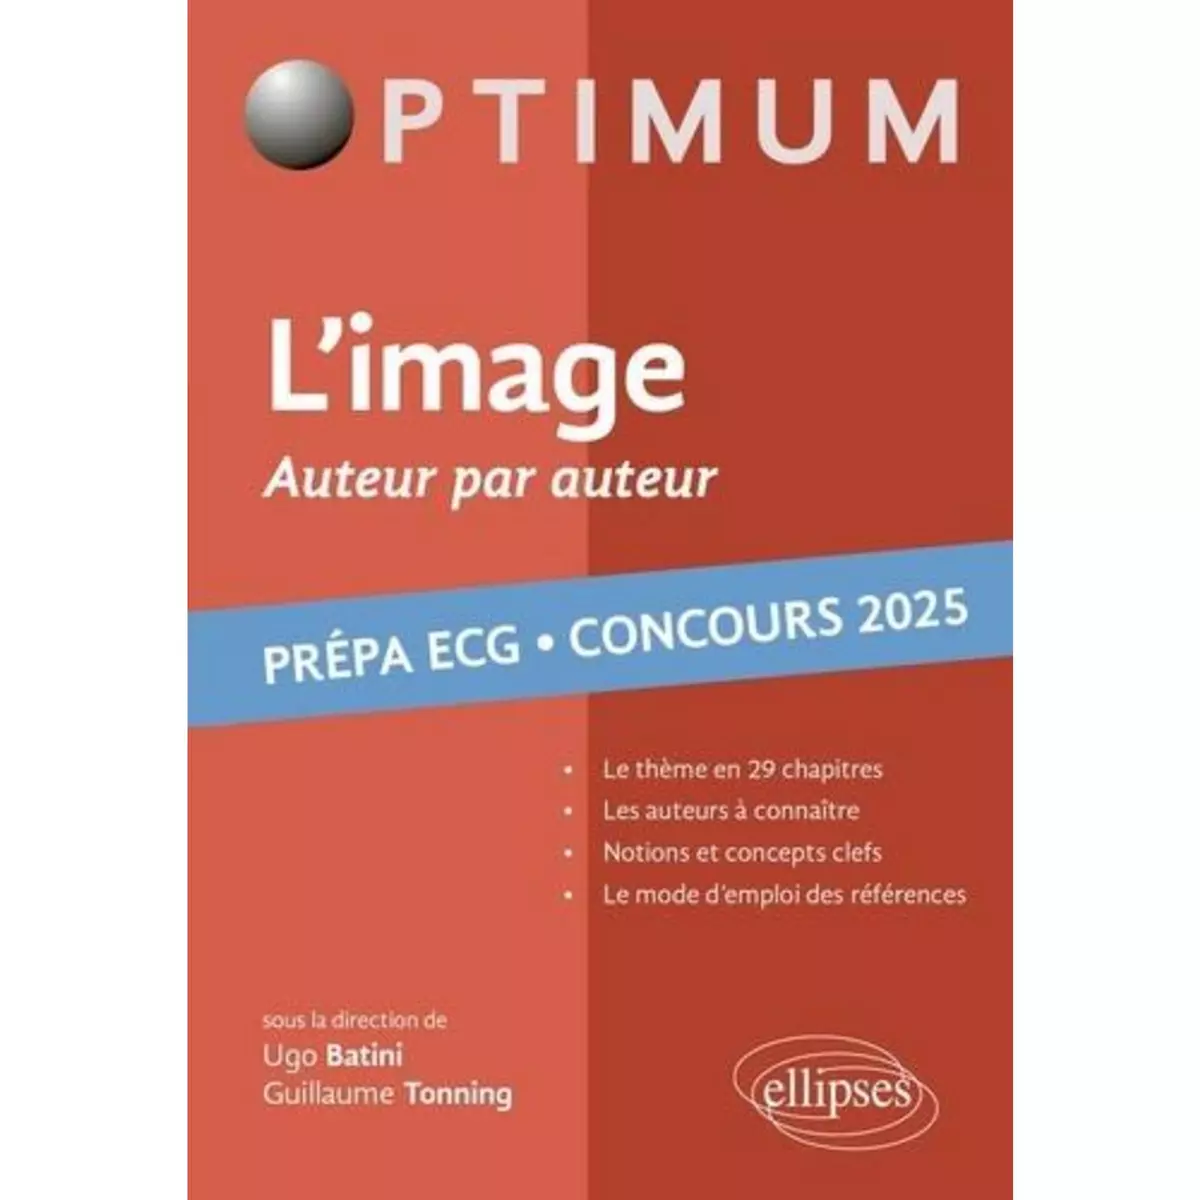  L'IMAGE, AUTEUR PAR AUTEUR. LITTERATURE, PHILOSOPHIE, CULTURE GENERALE - PREPA ECG. CONCOURS, EDITION 2025, Batini Ugo